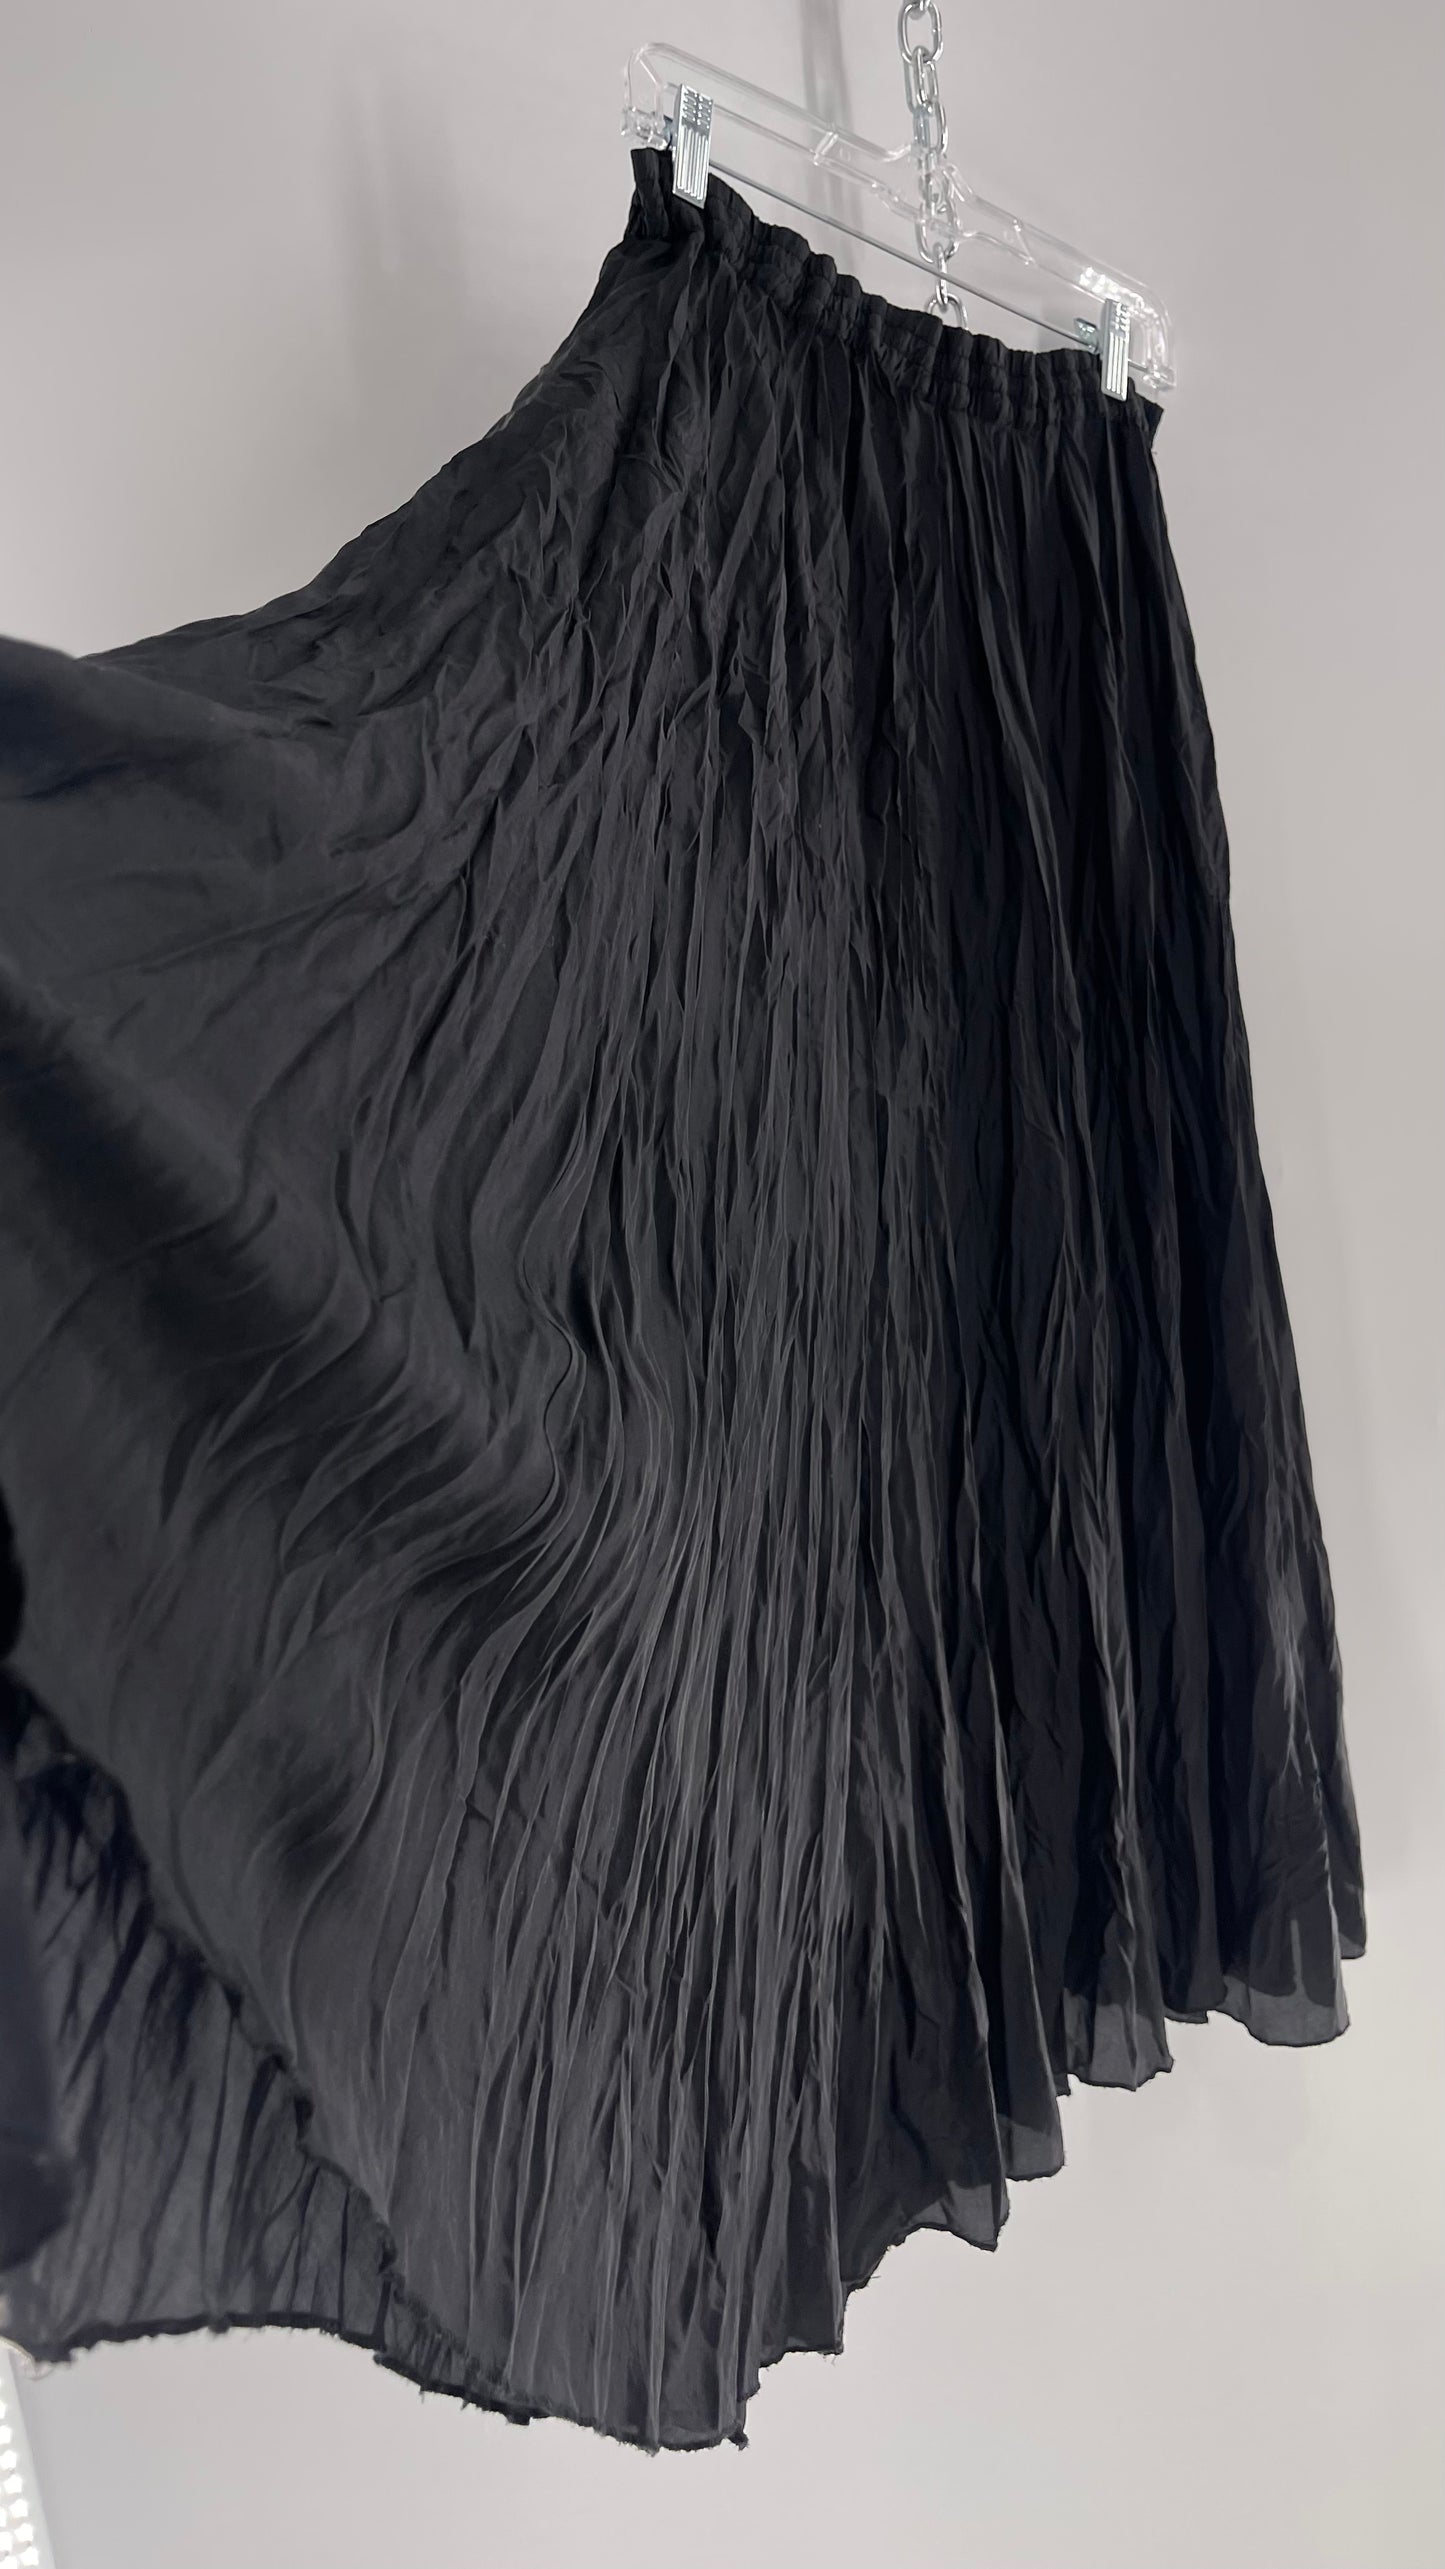 Vintage Adrian Jordan Black Full Length Crinkle Skirt 100% Silk (18/20)